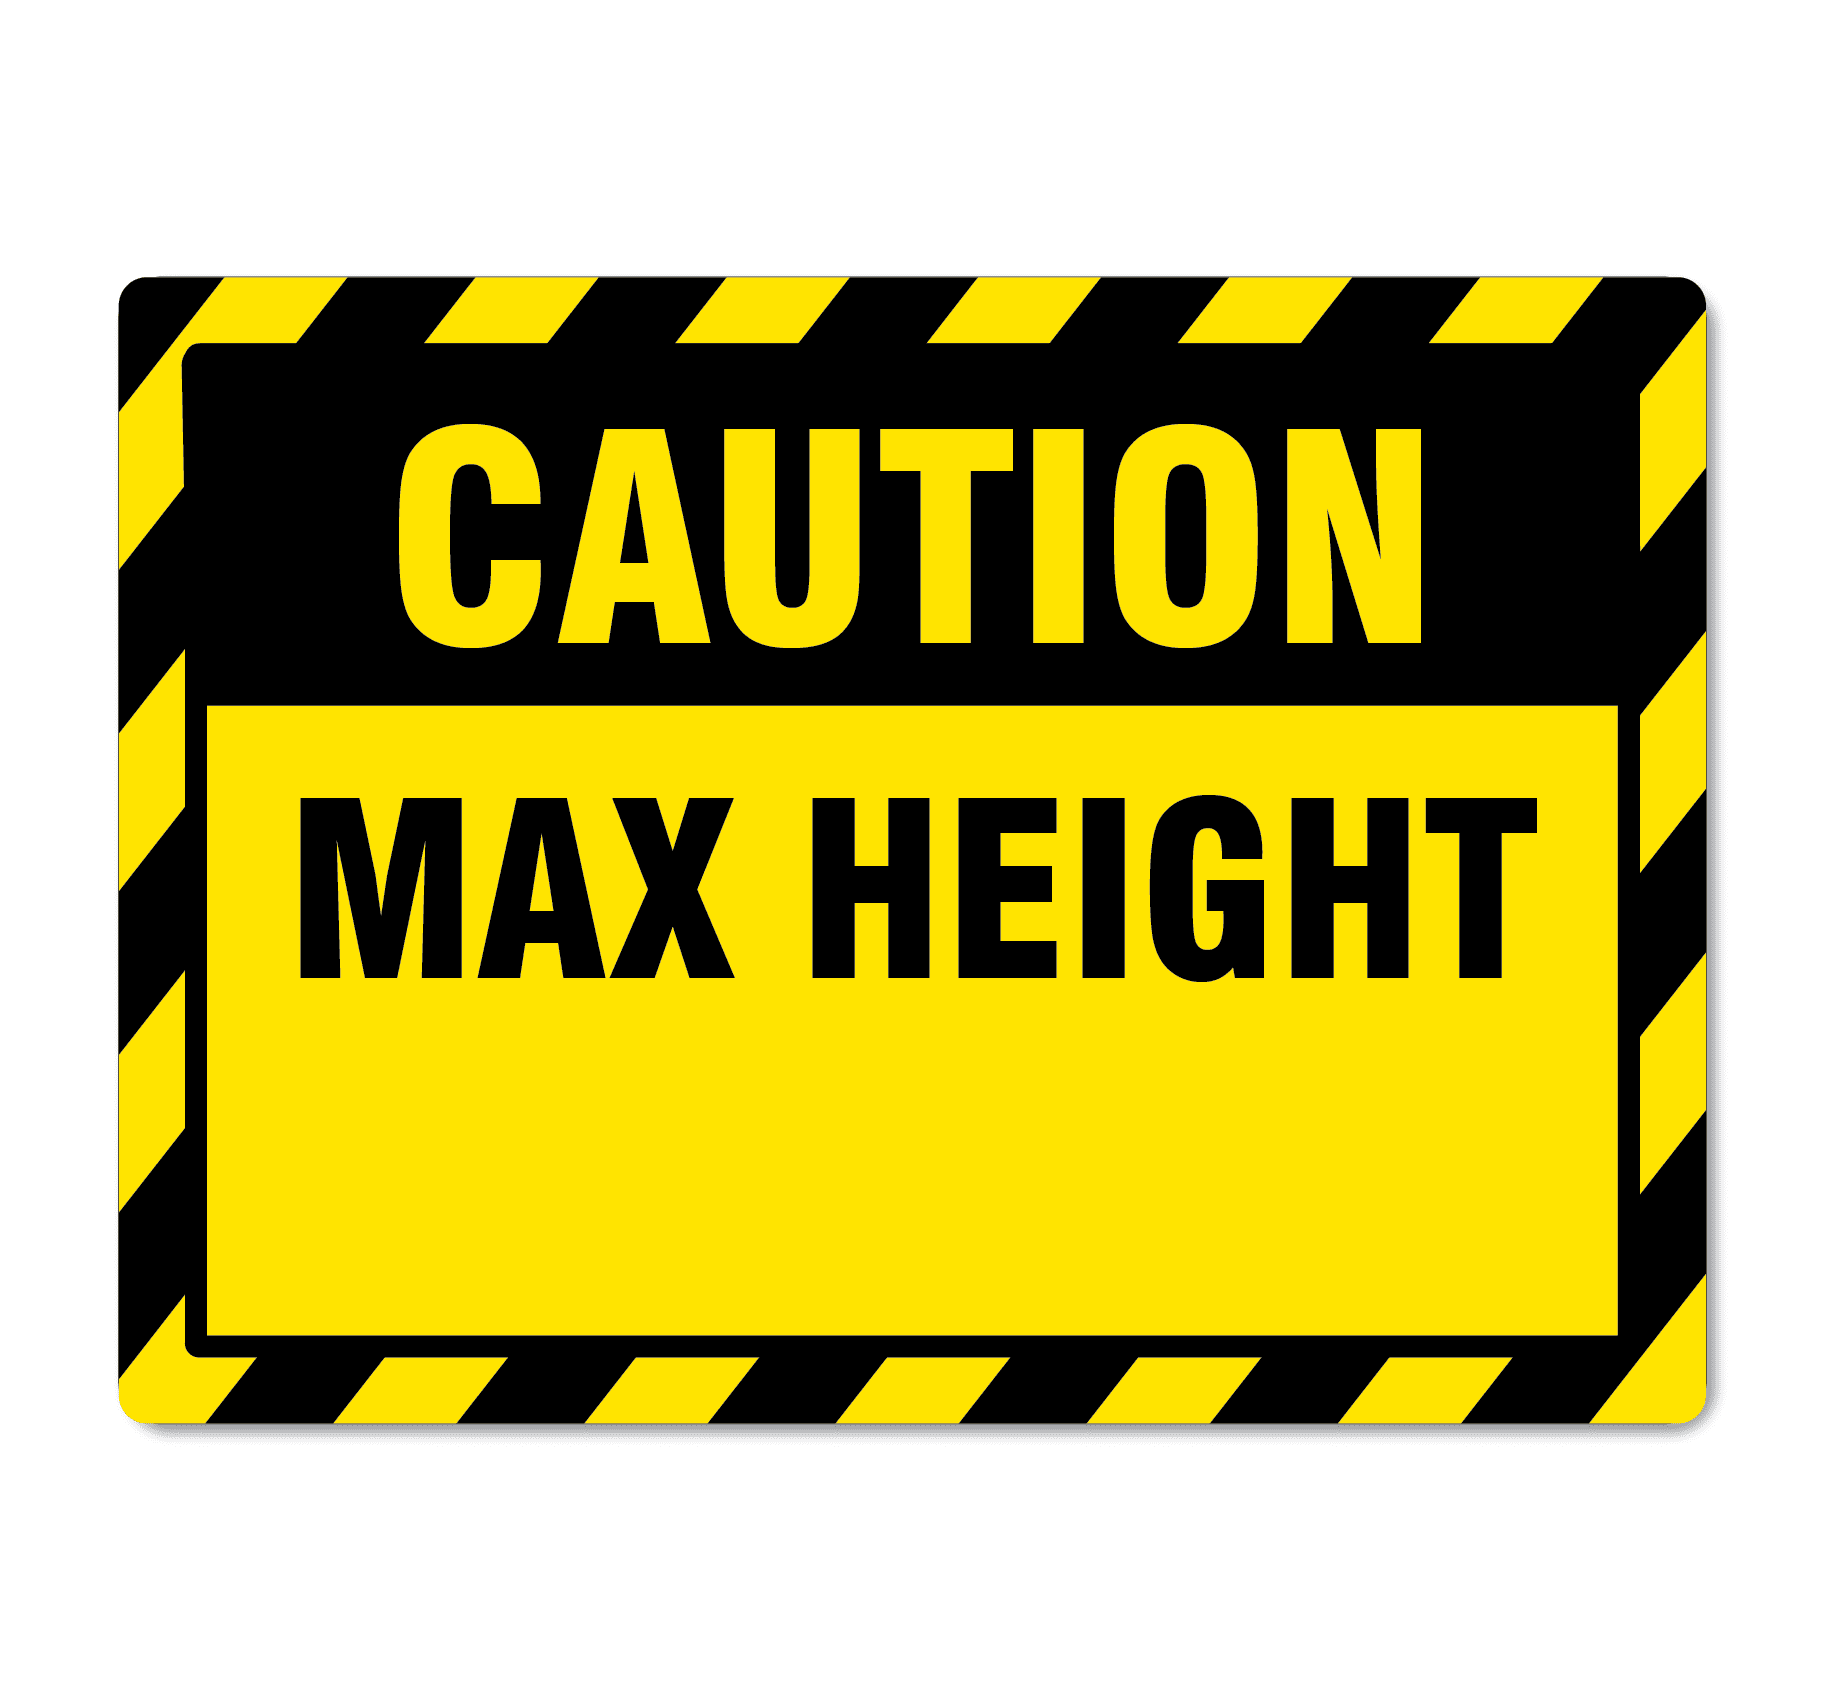 Maximum height